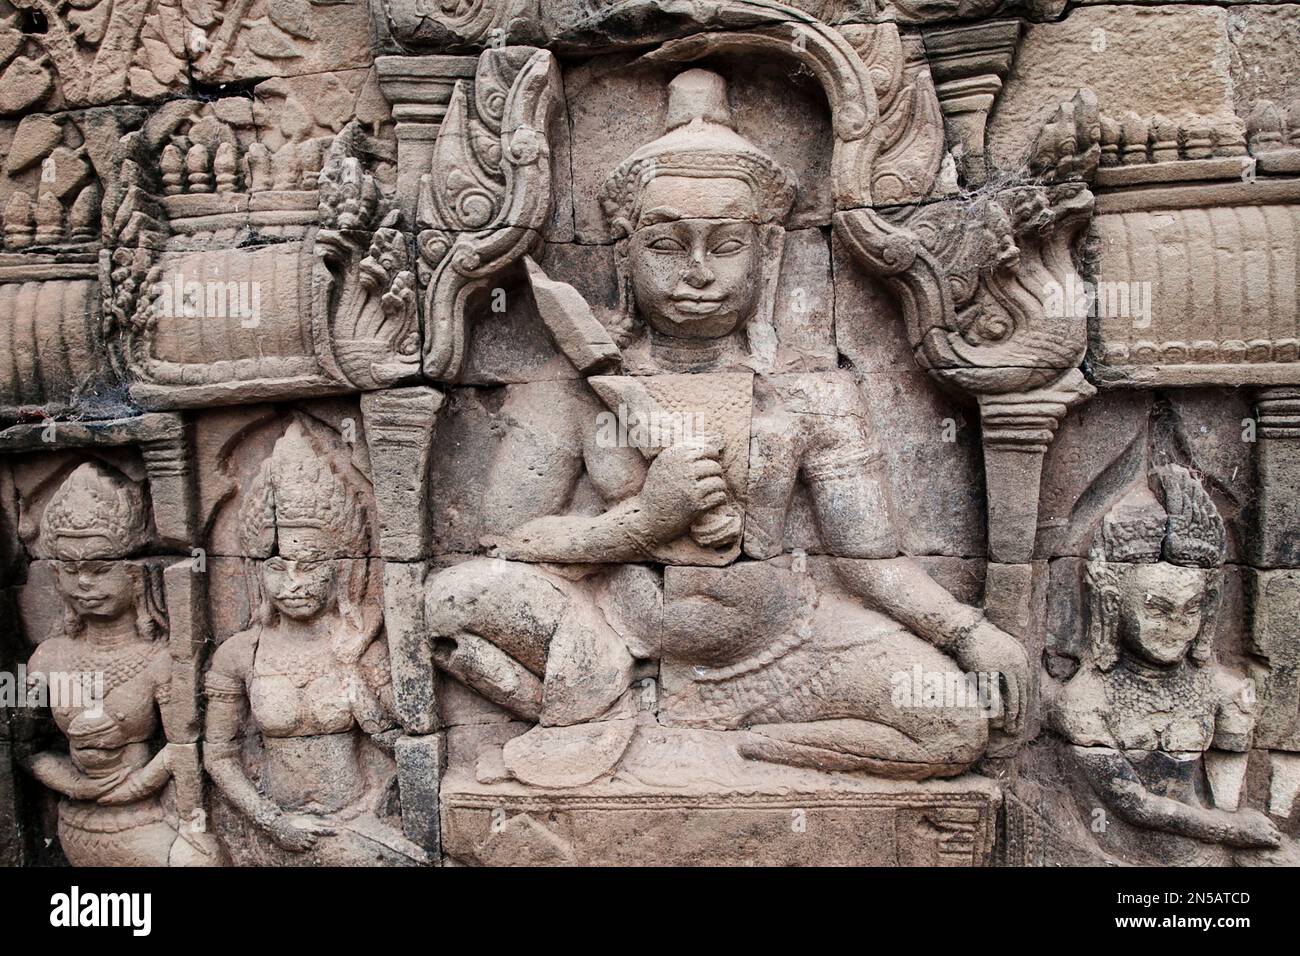 Stone carvings at Bayon Temple, Angkor Thom, Siem Reap, Cambodia Stock Photo